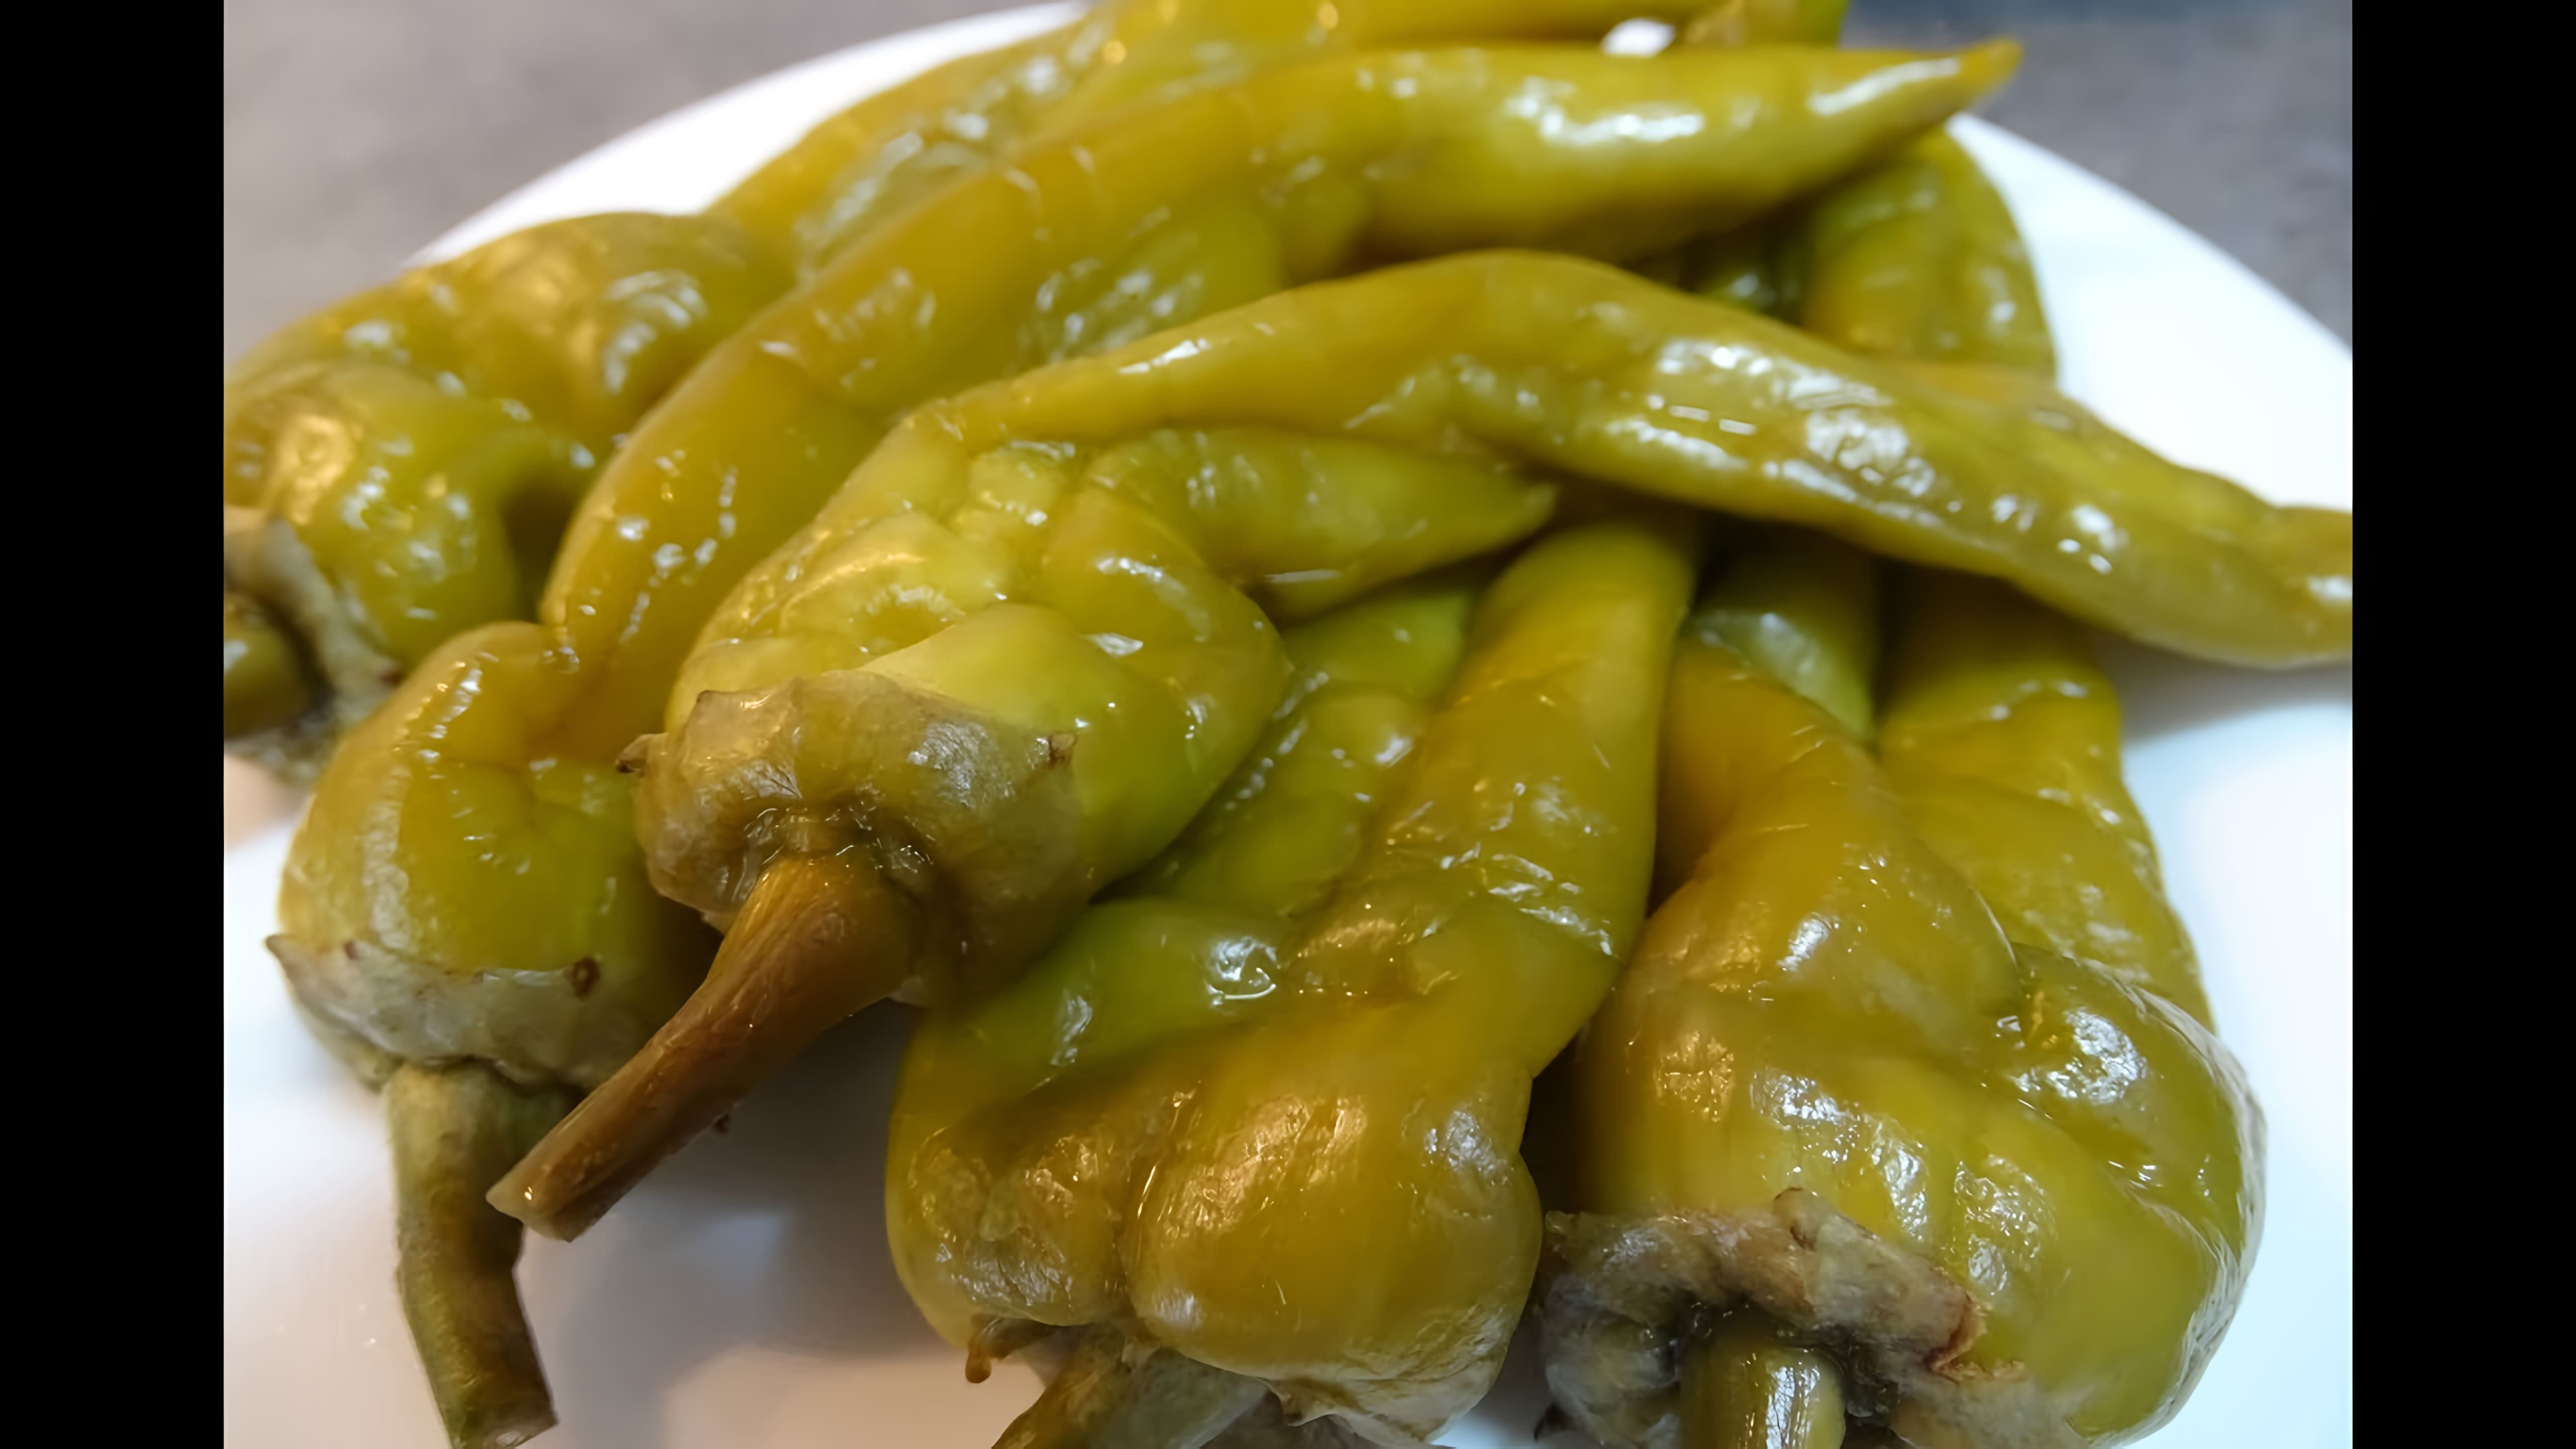 Видео как приготовить маринованный перец по-армянски, называемый "цитсак кваш" или маринованный зеленый перец